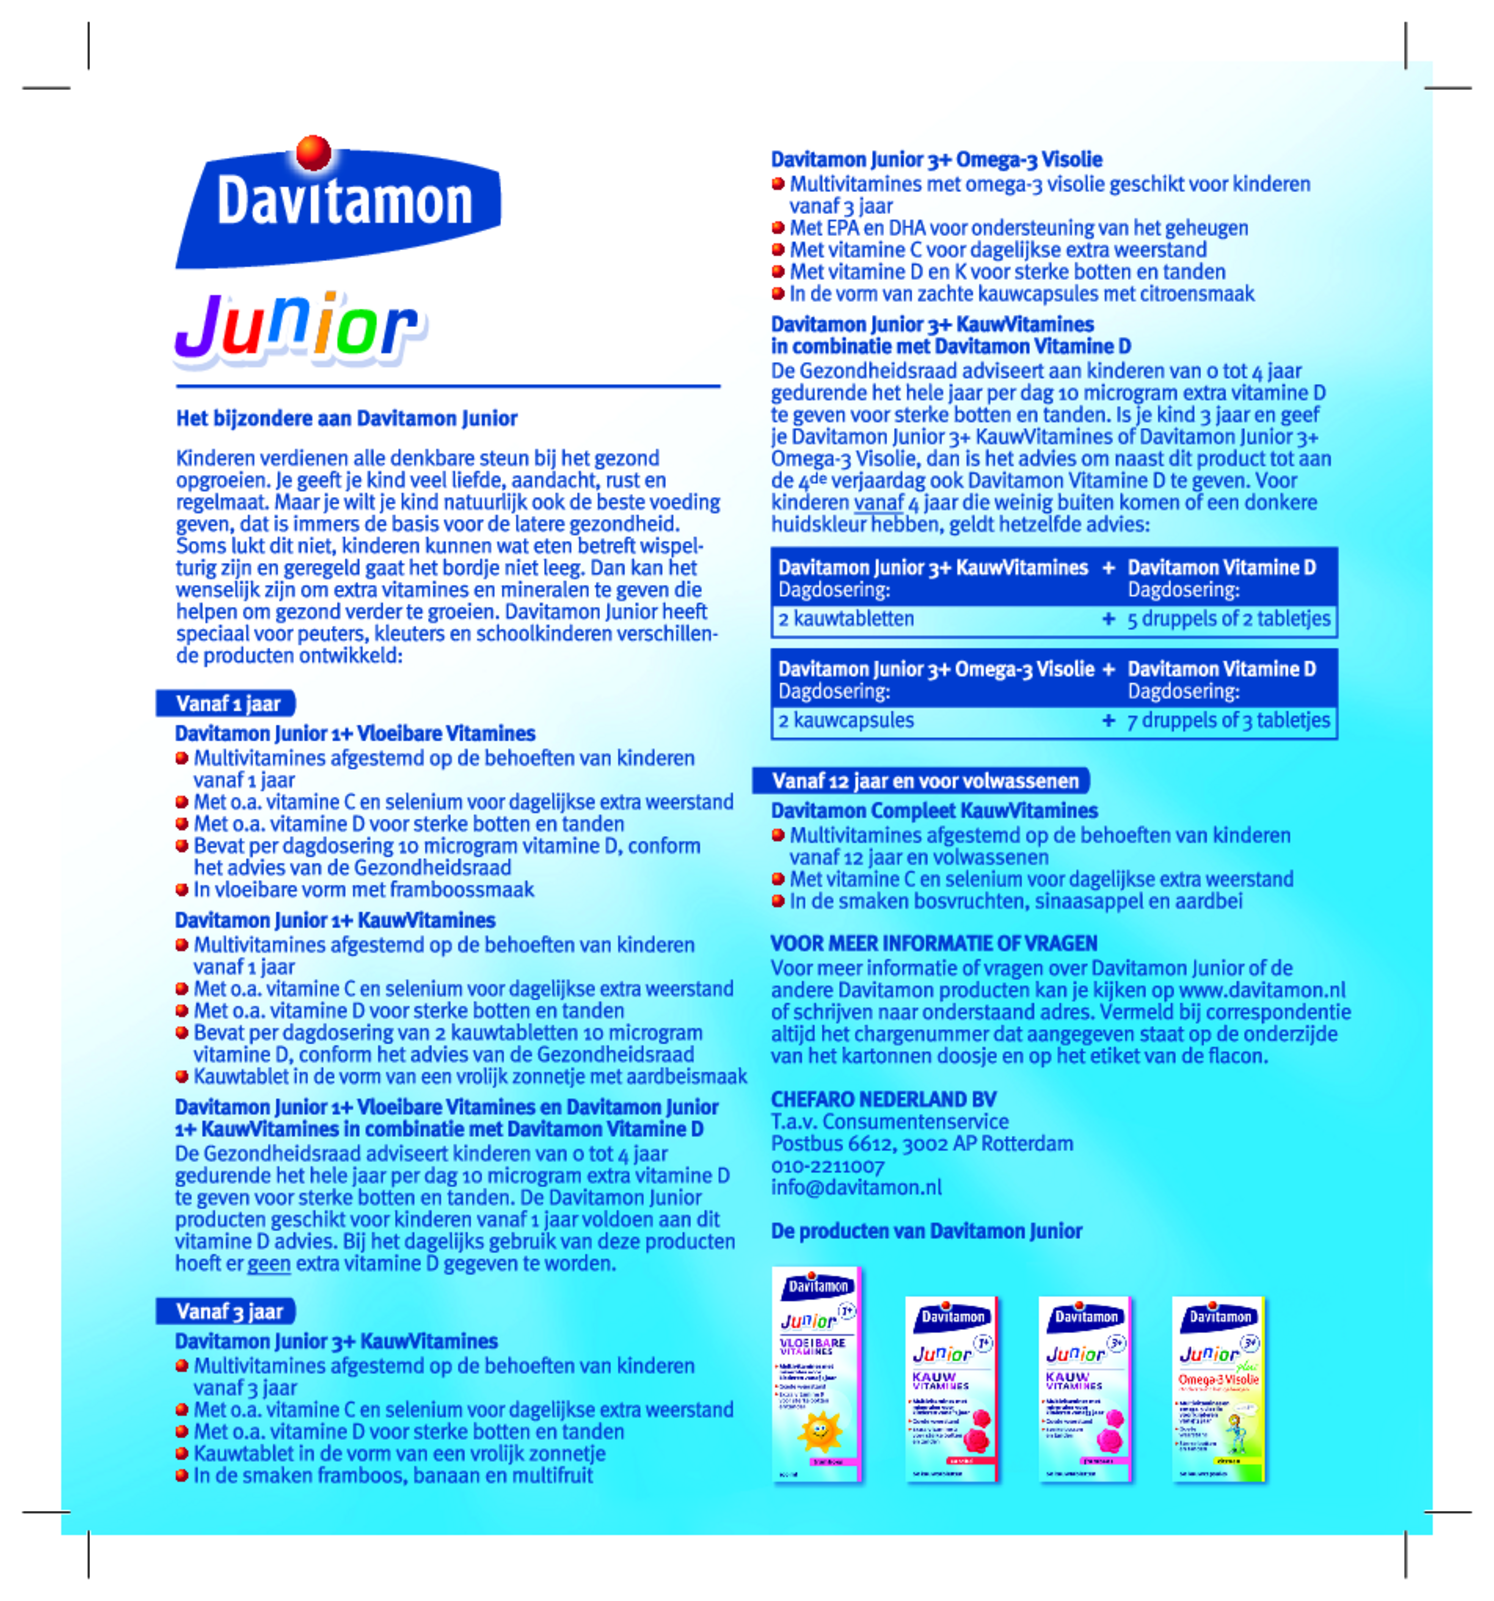 Junior 3+ Kauw Vitamines Framboos afbeelding van document #1, gebruiksaanwijzing